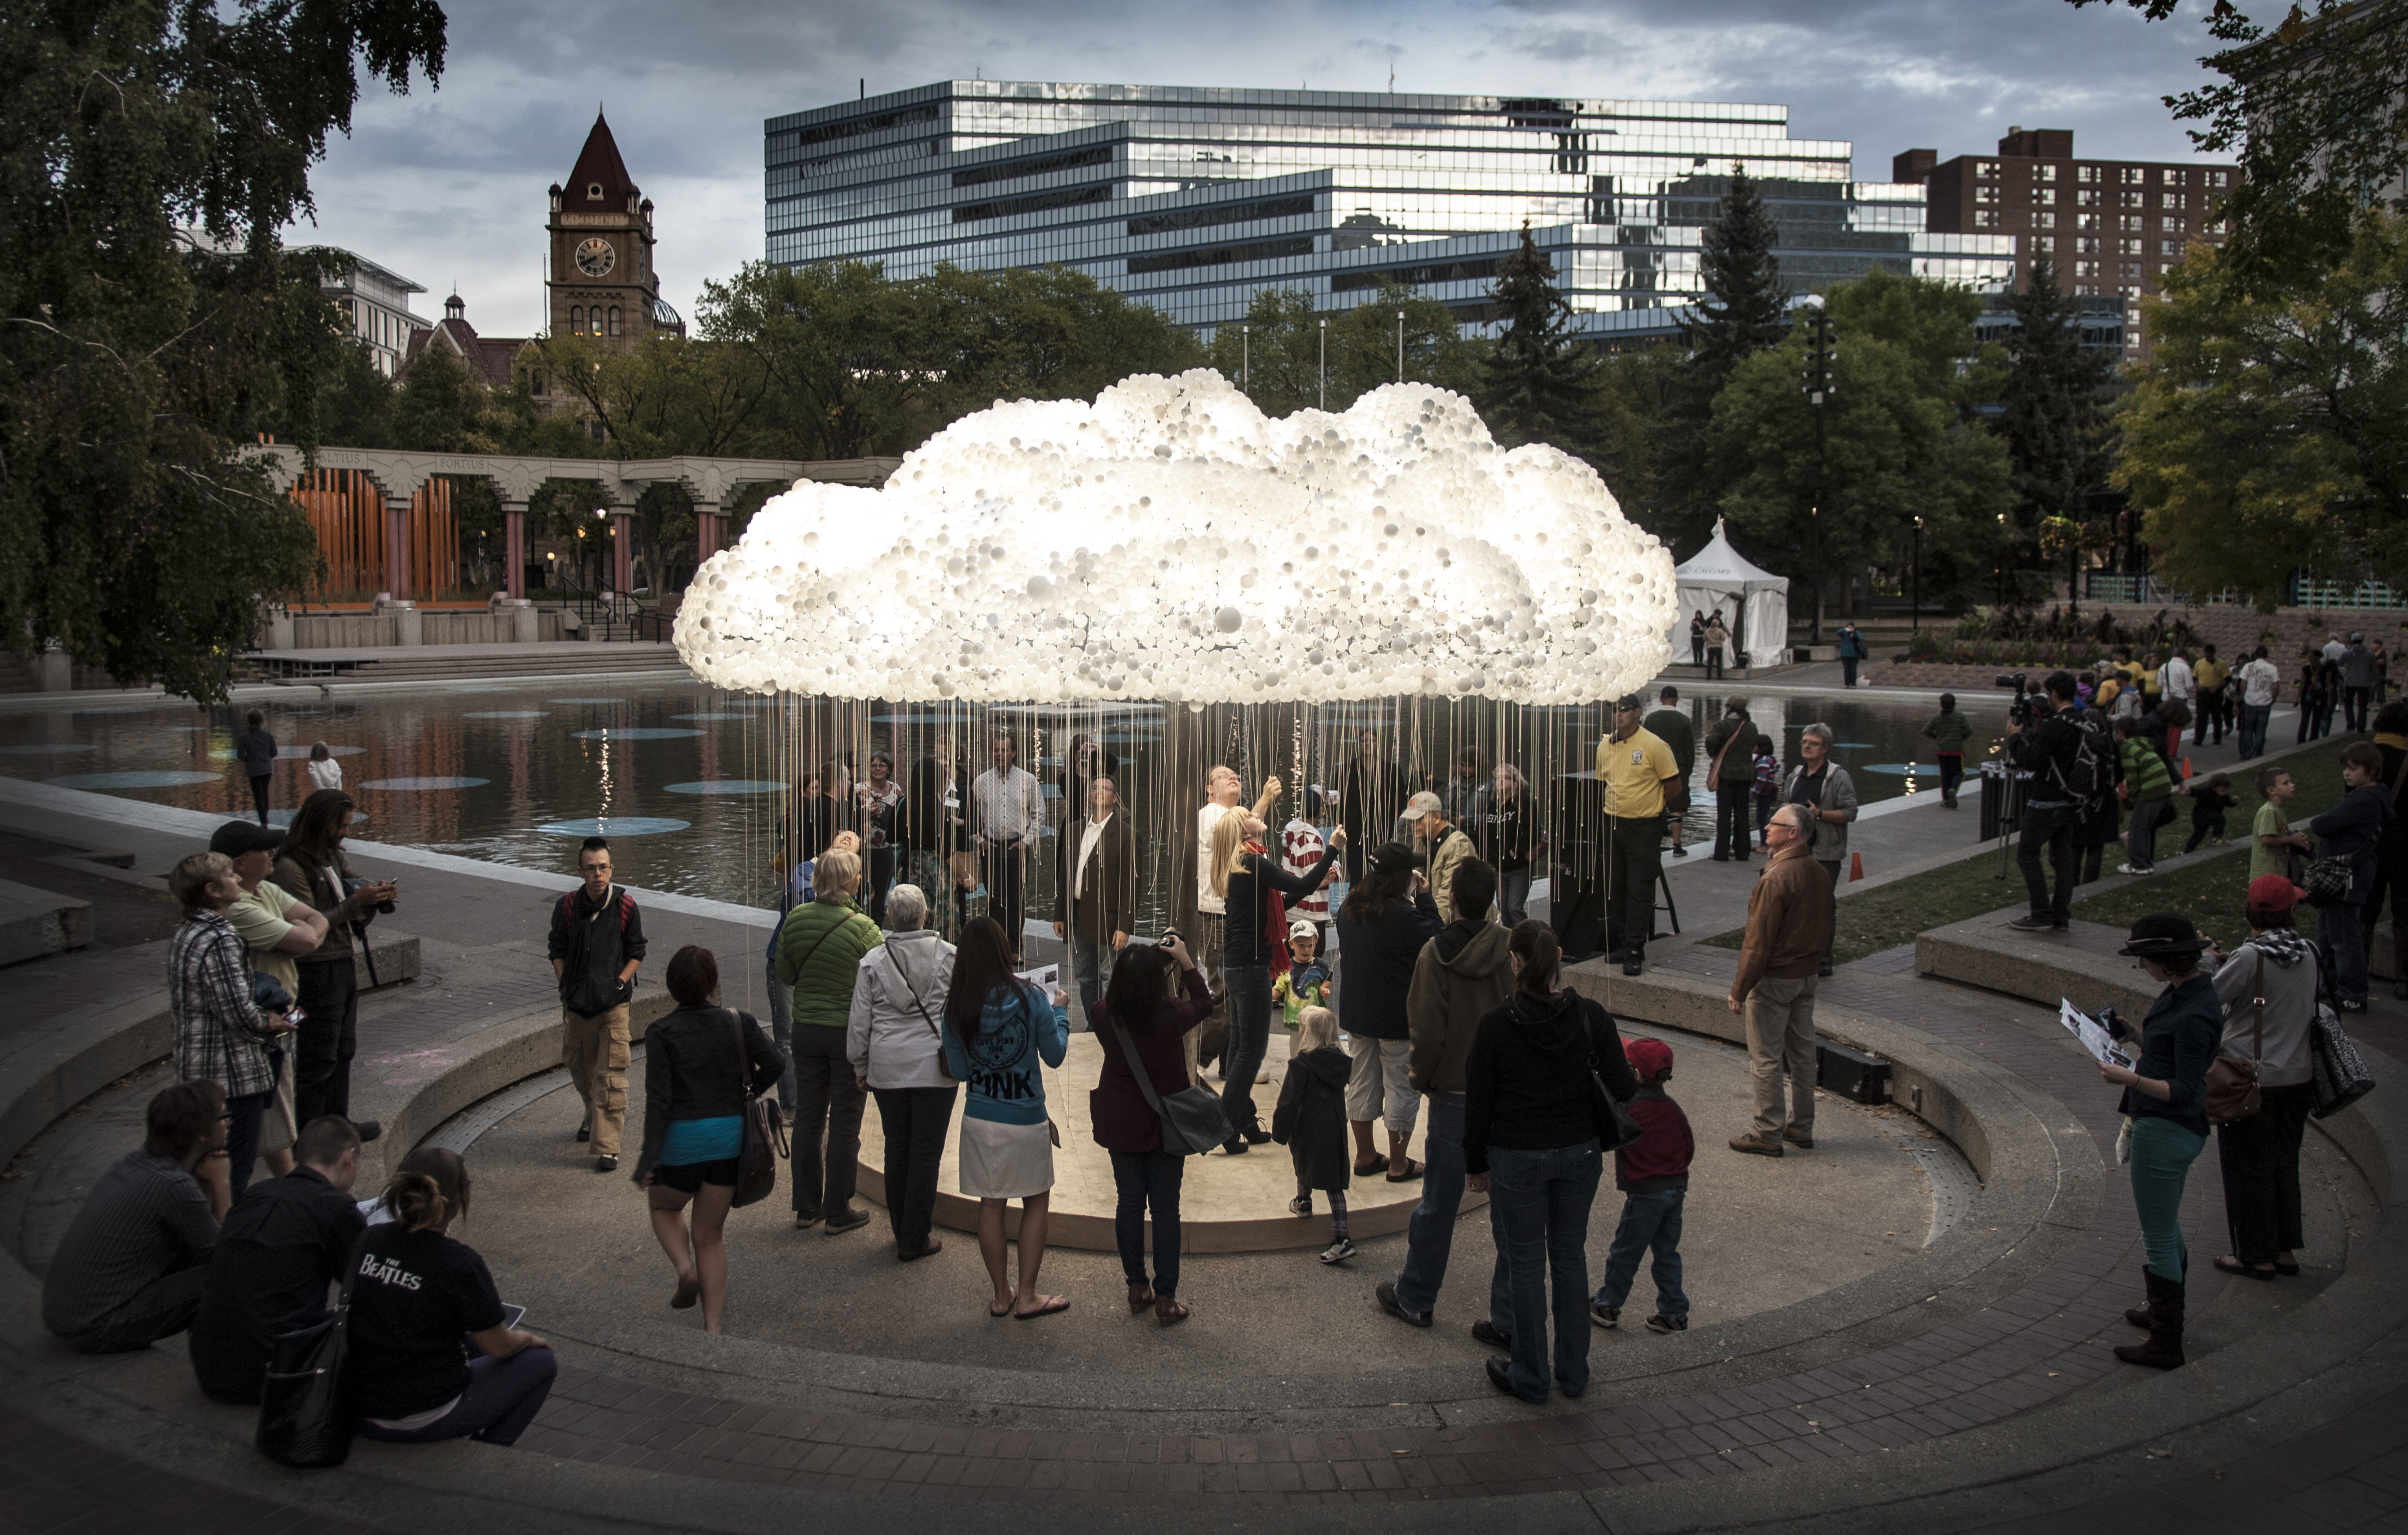 6000 ampoules pour cette sculpture interactive de nuage lumineux